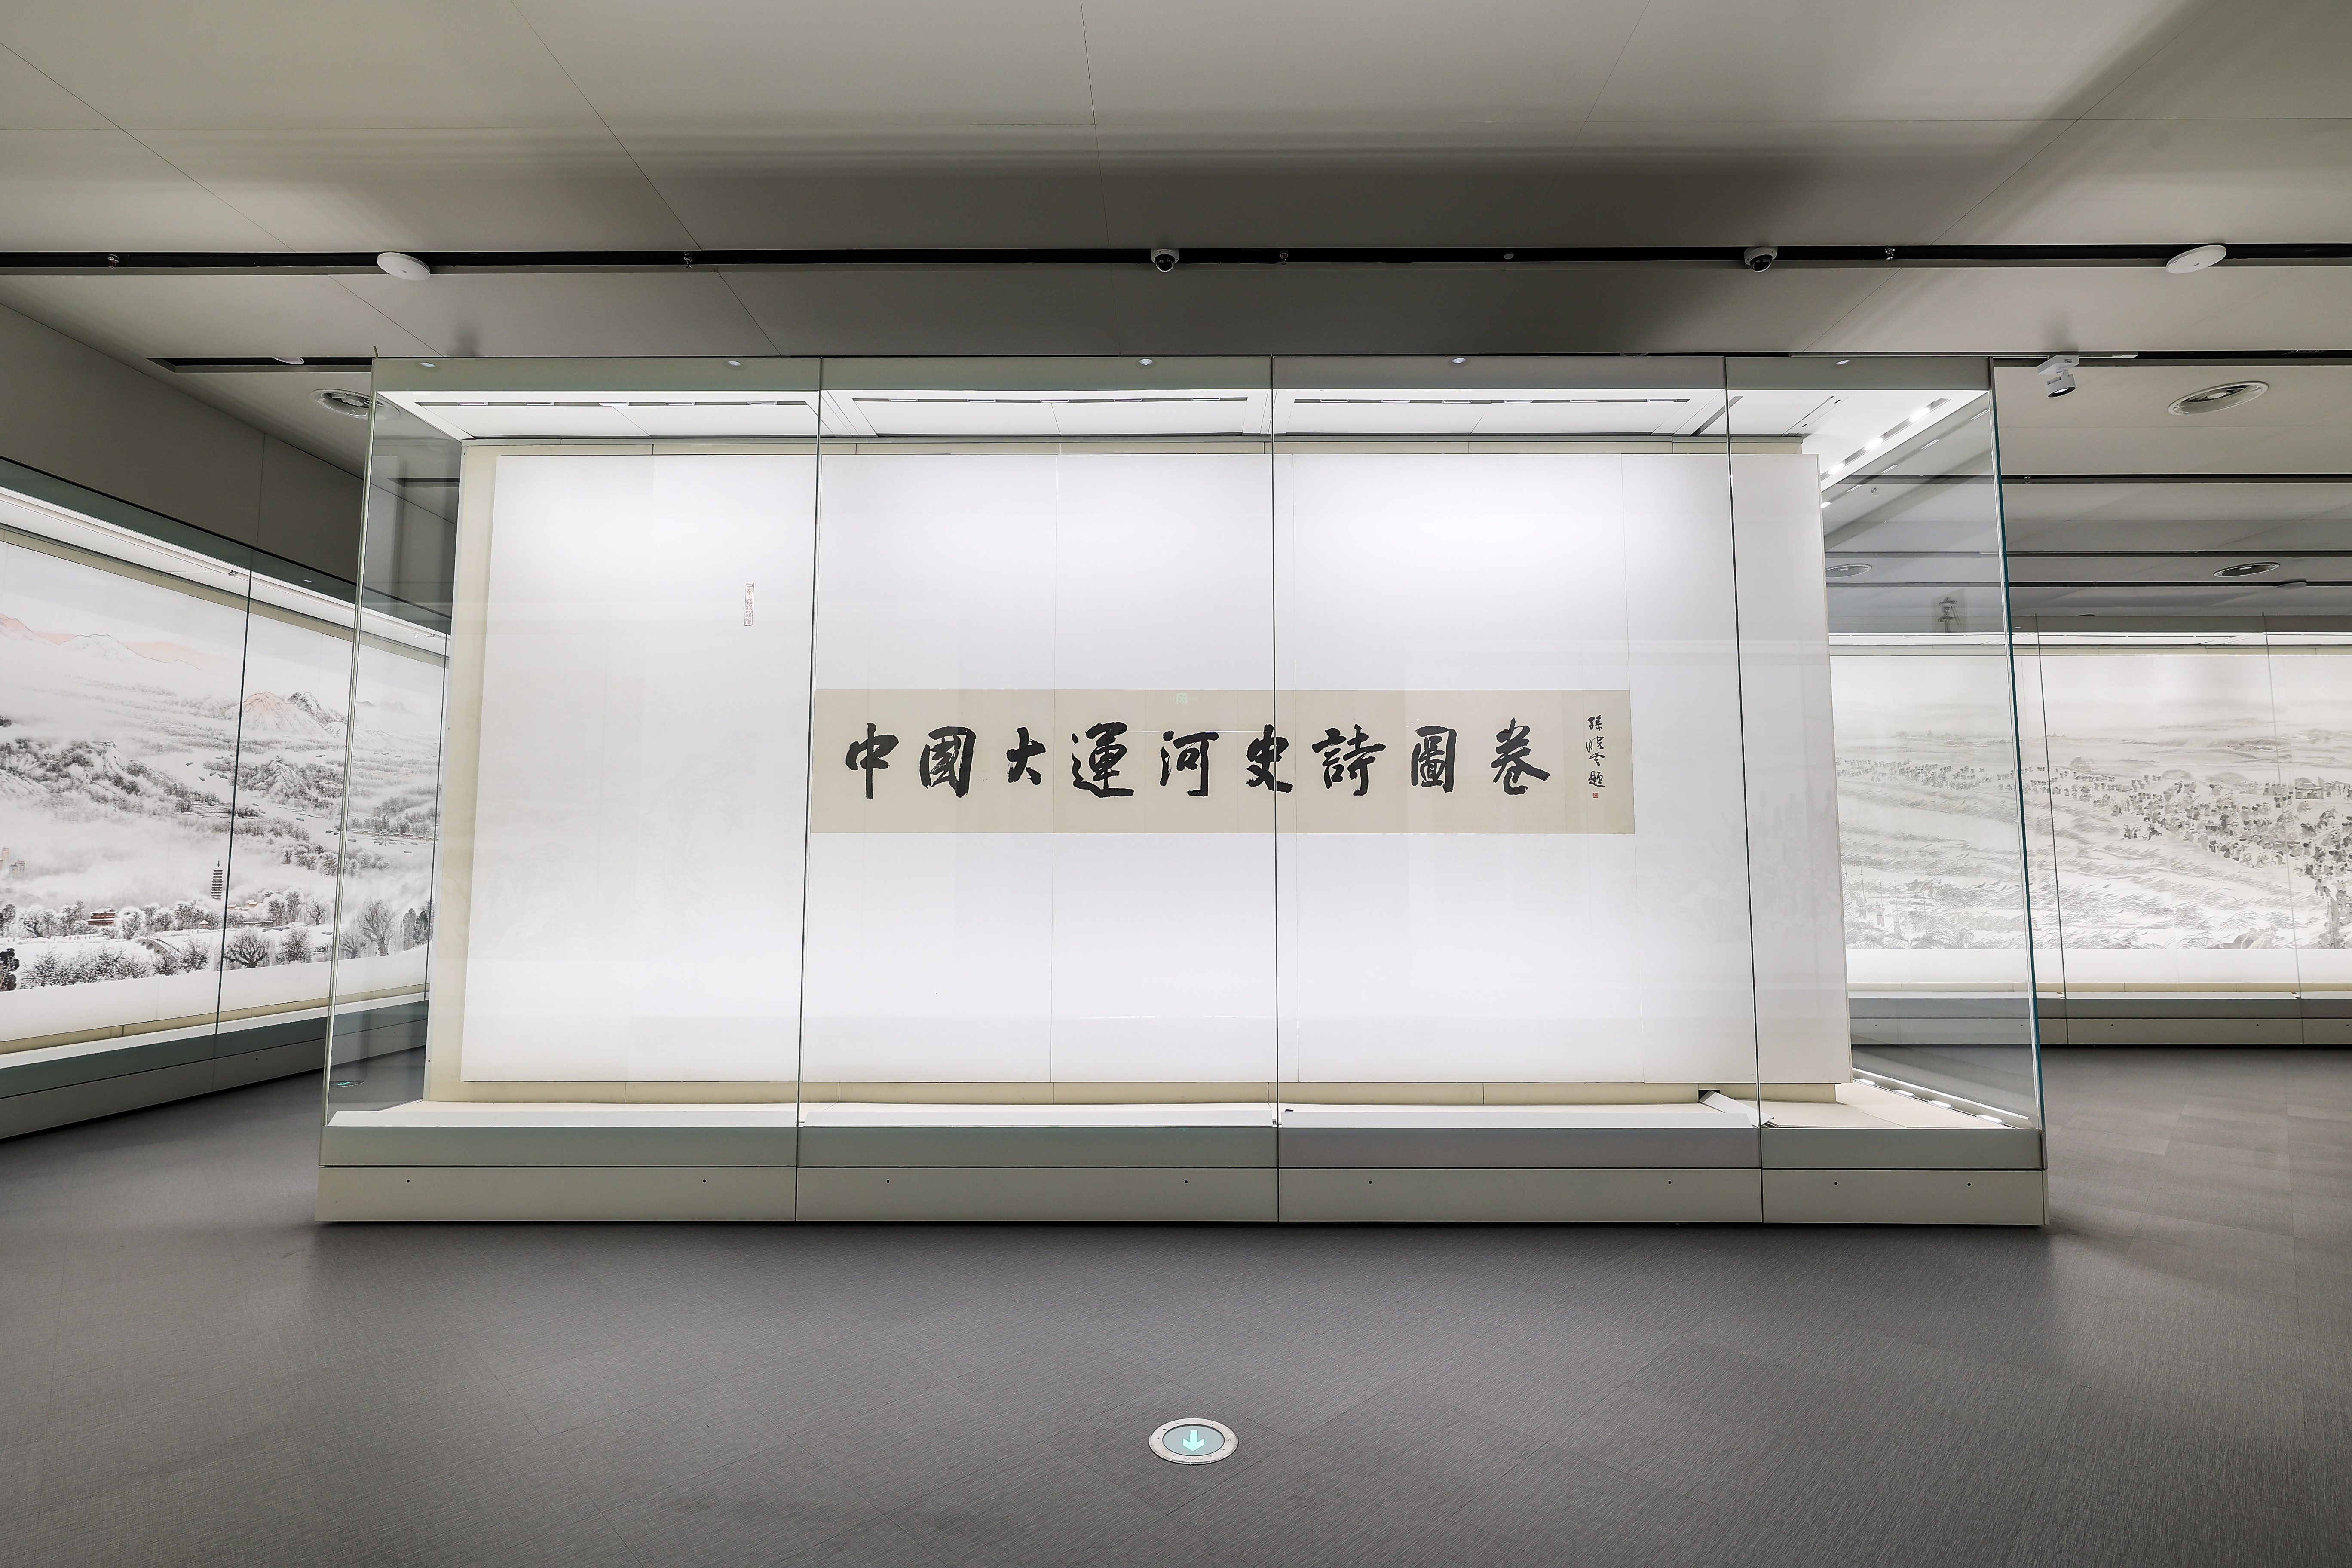 中国大运河史诗图卷：浪漫的笔意诉说千年流淌的故事